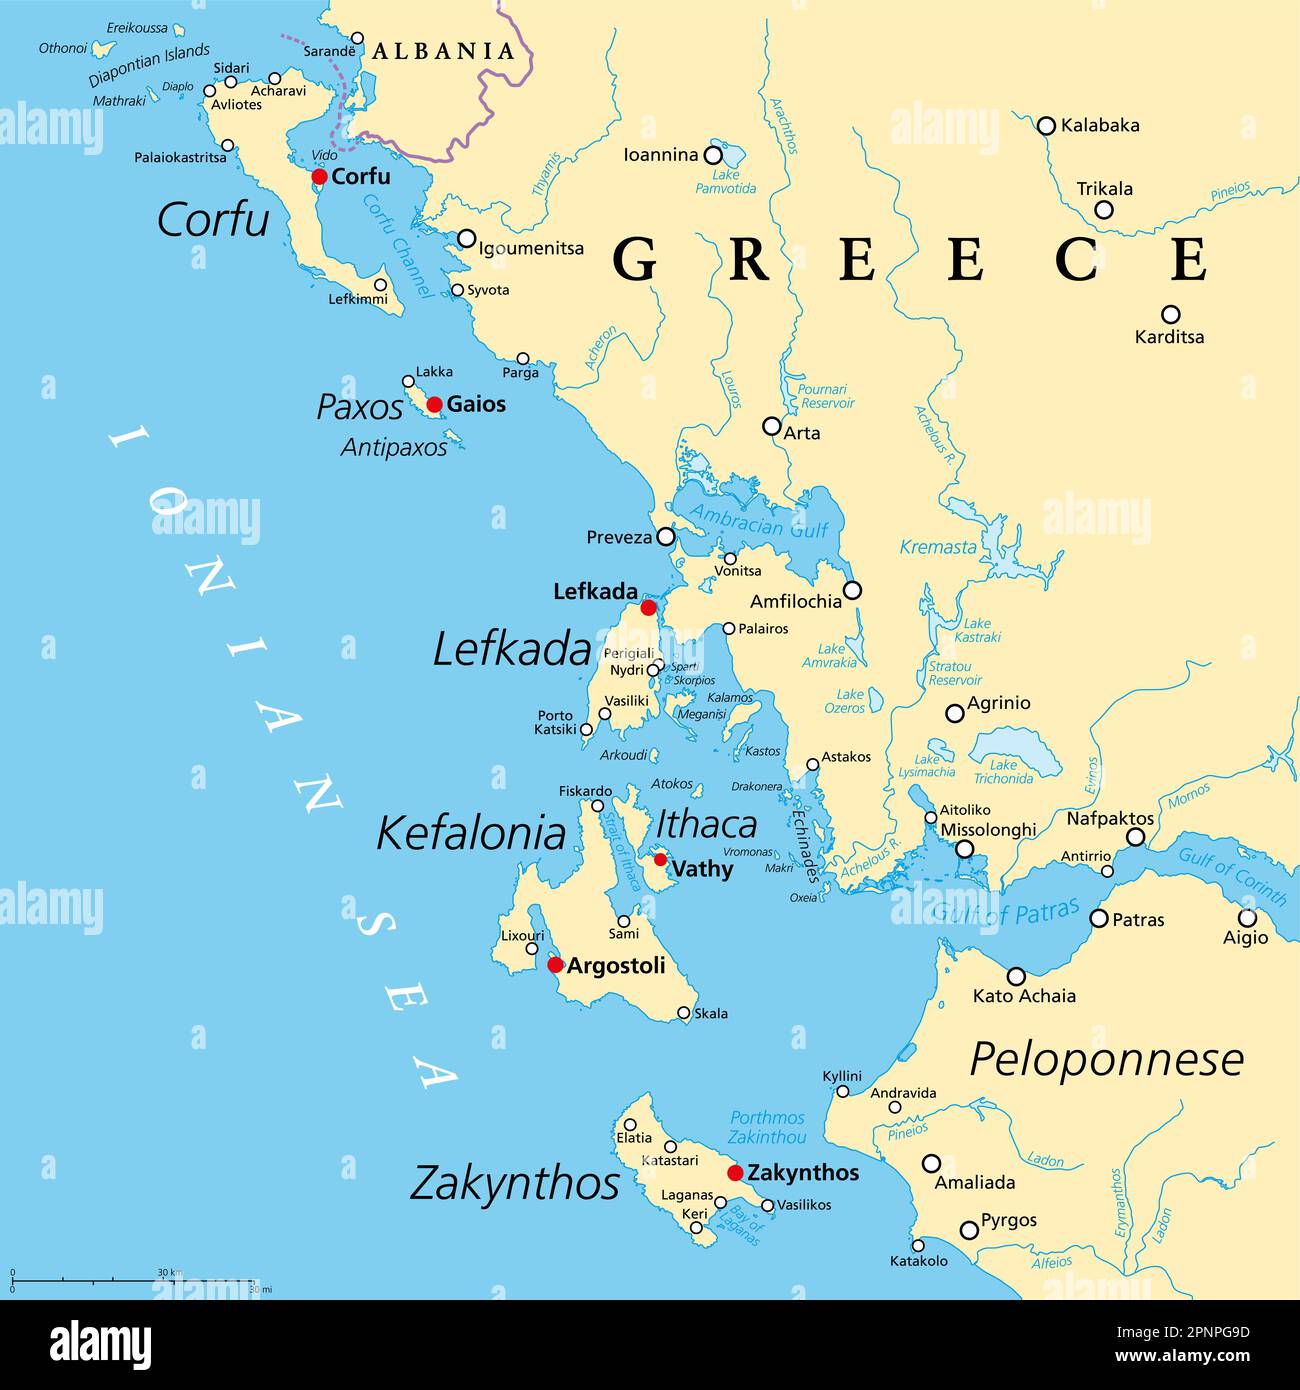 Région des îles Ioniennes de Grèce, carte politique. Groupe grec des îles de la mer Ionienne. Corfou, Paxos, Antipaxos, Lefkada, Kefalonia, Ithaca, Zakynthos. Banque D'Images